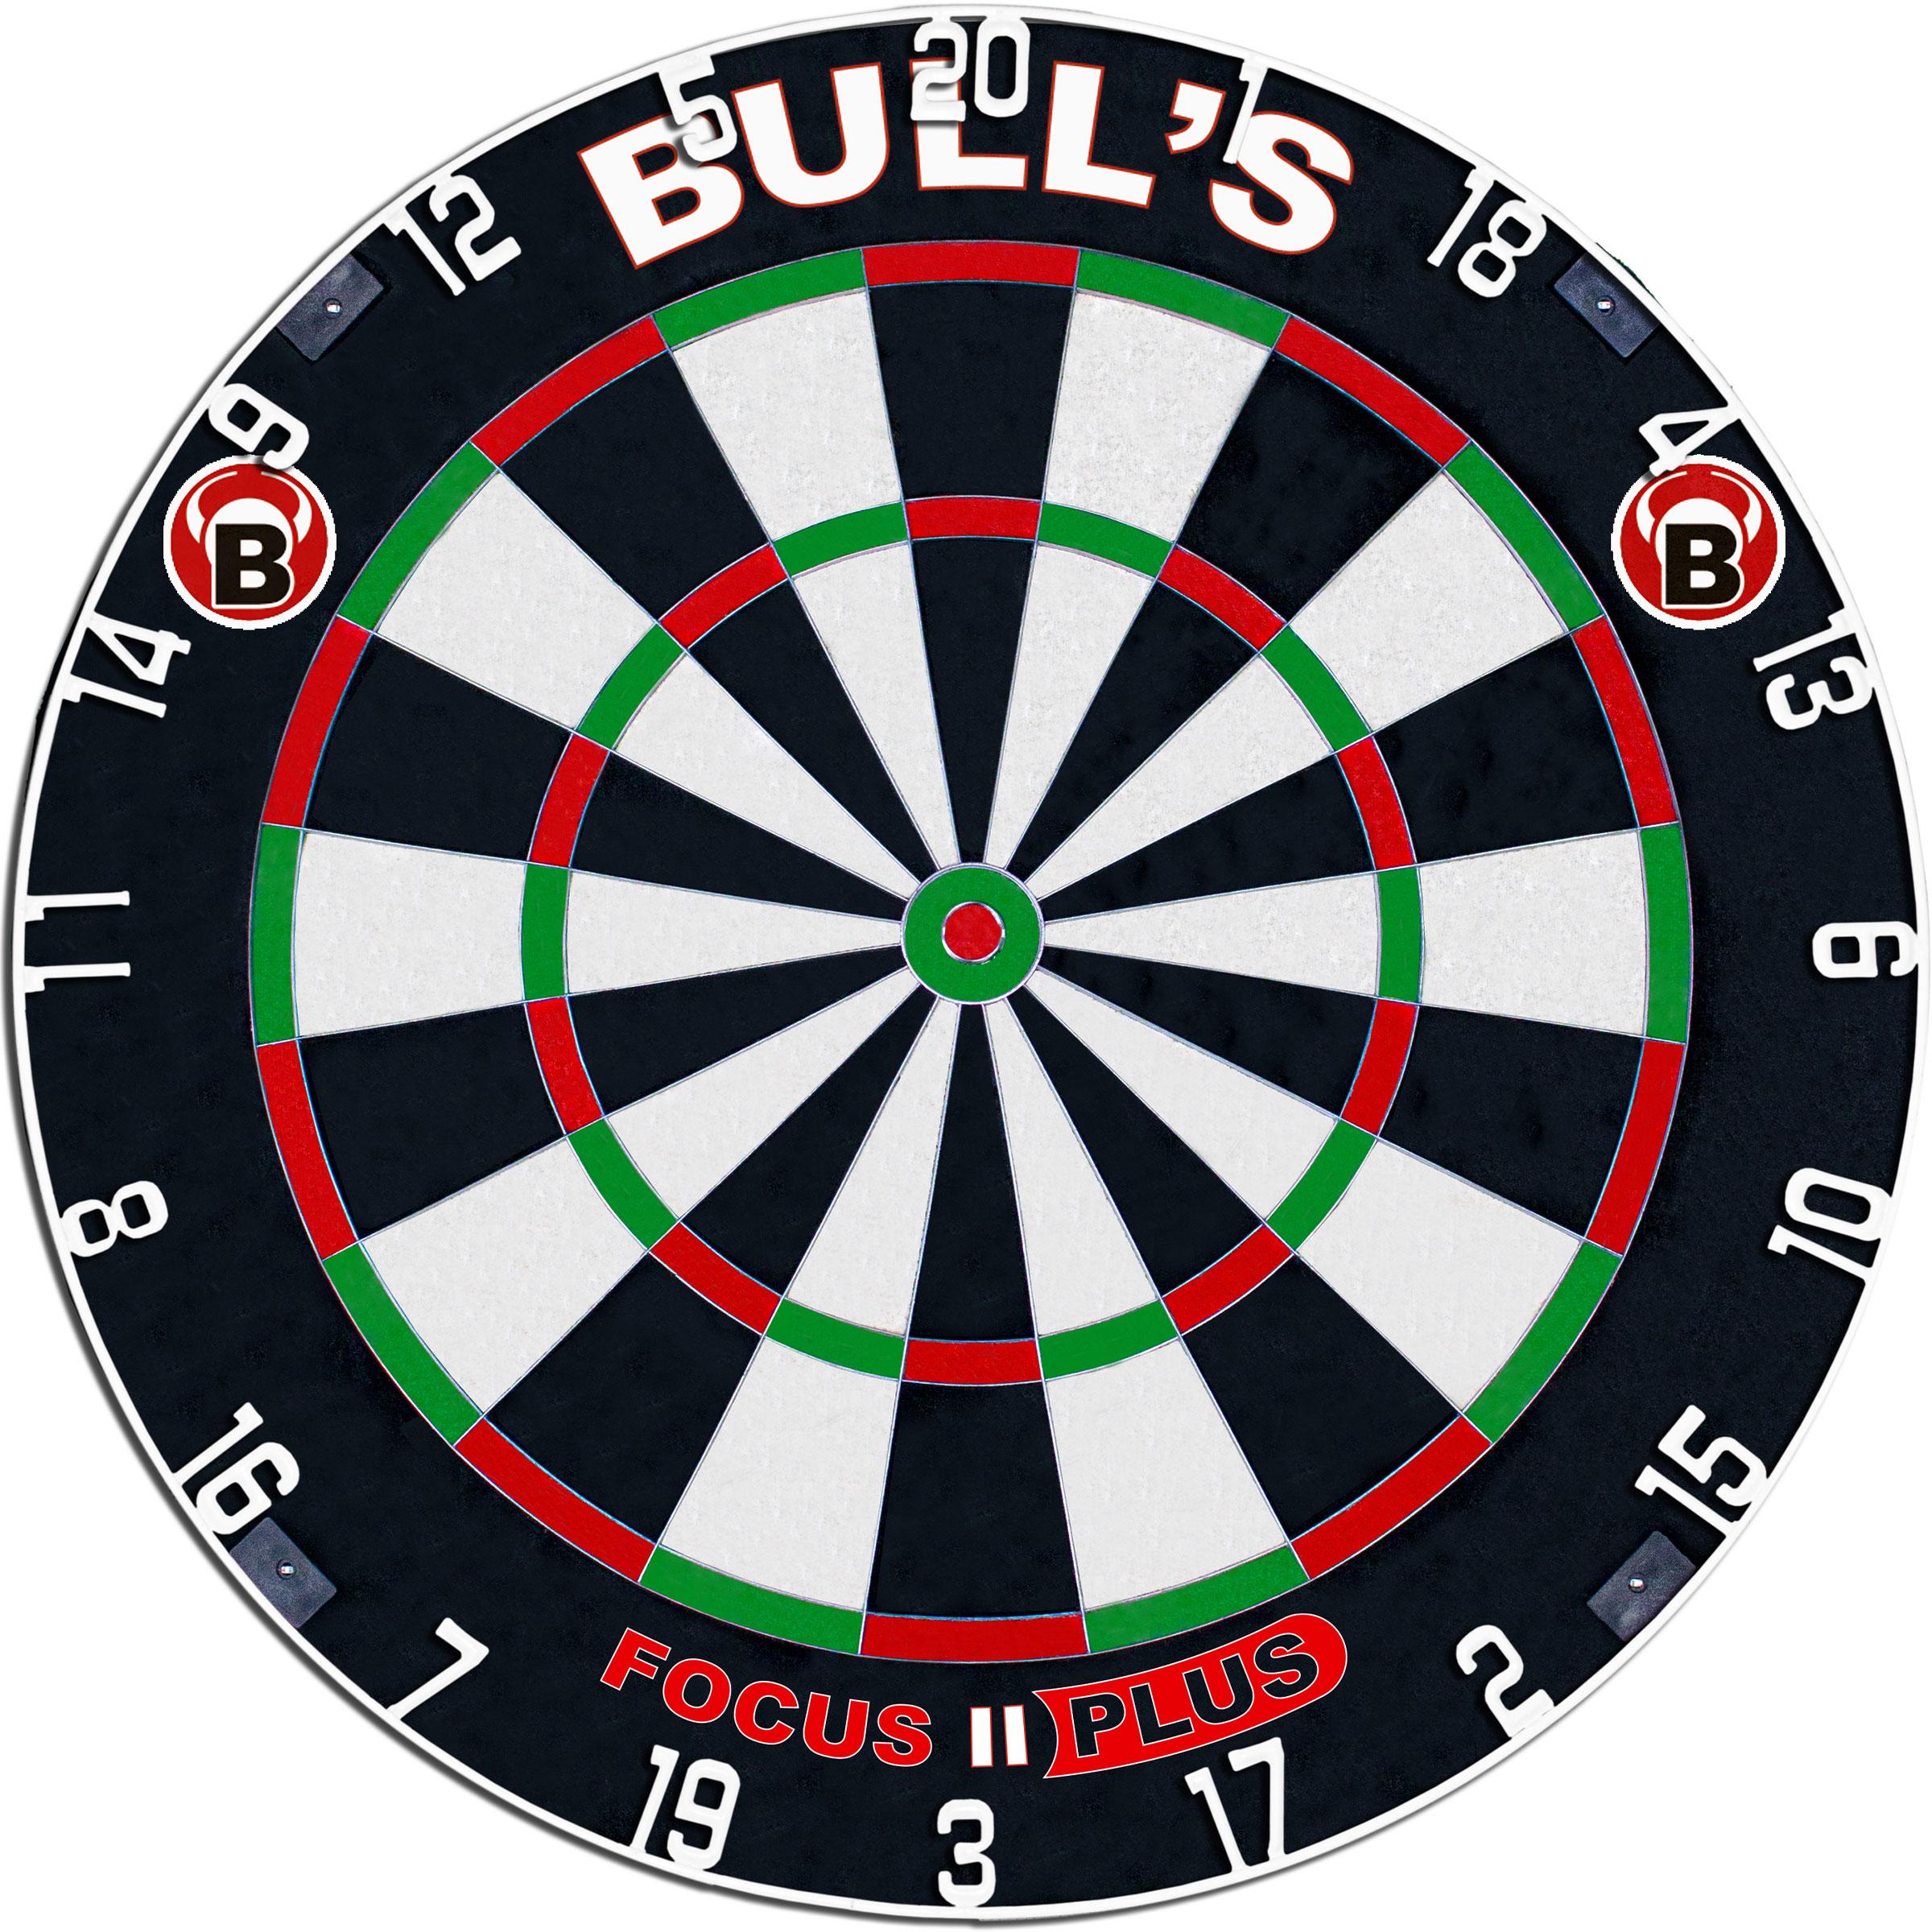 Bull's Focus II Plus Dart Board